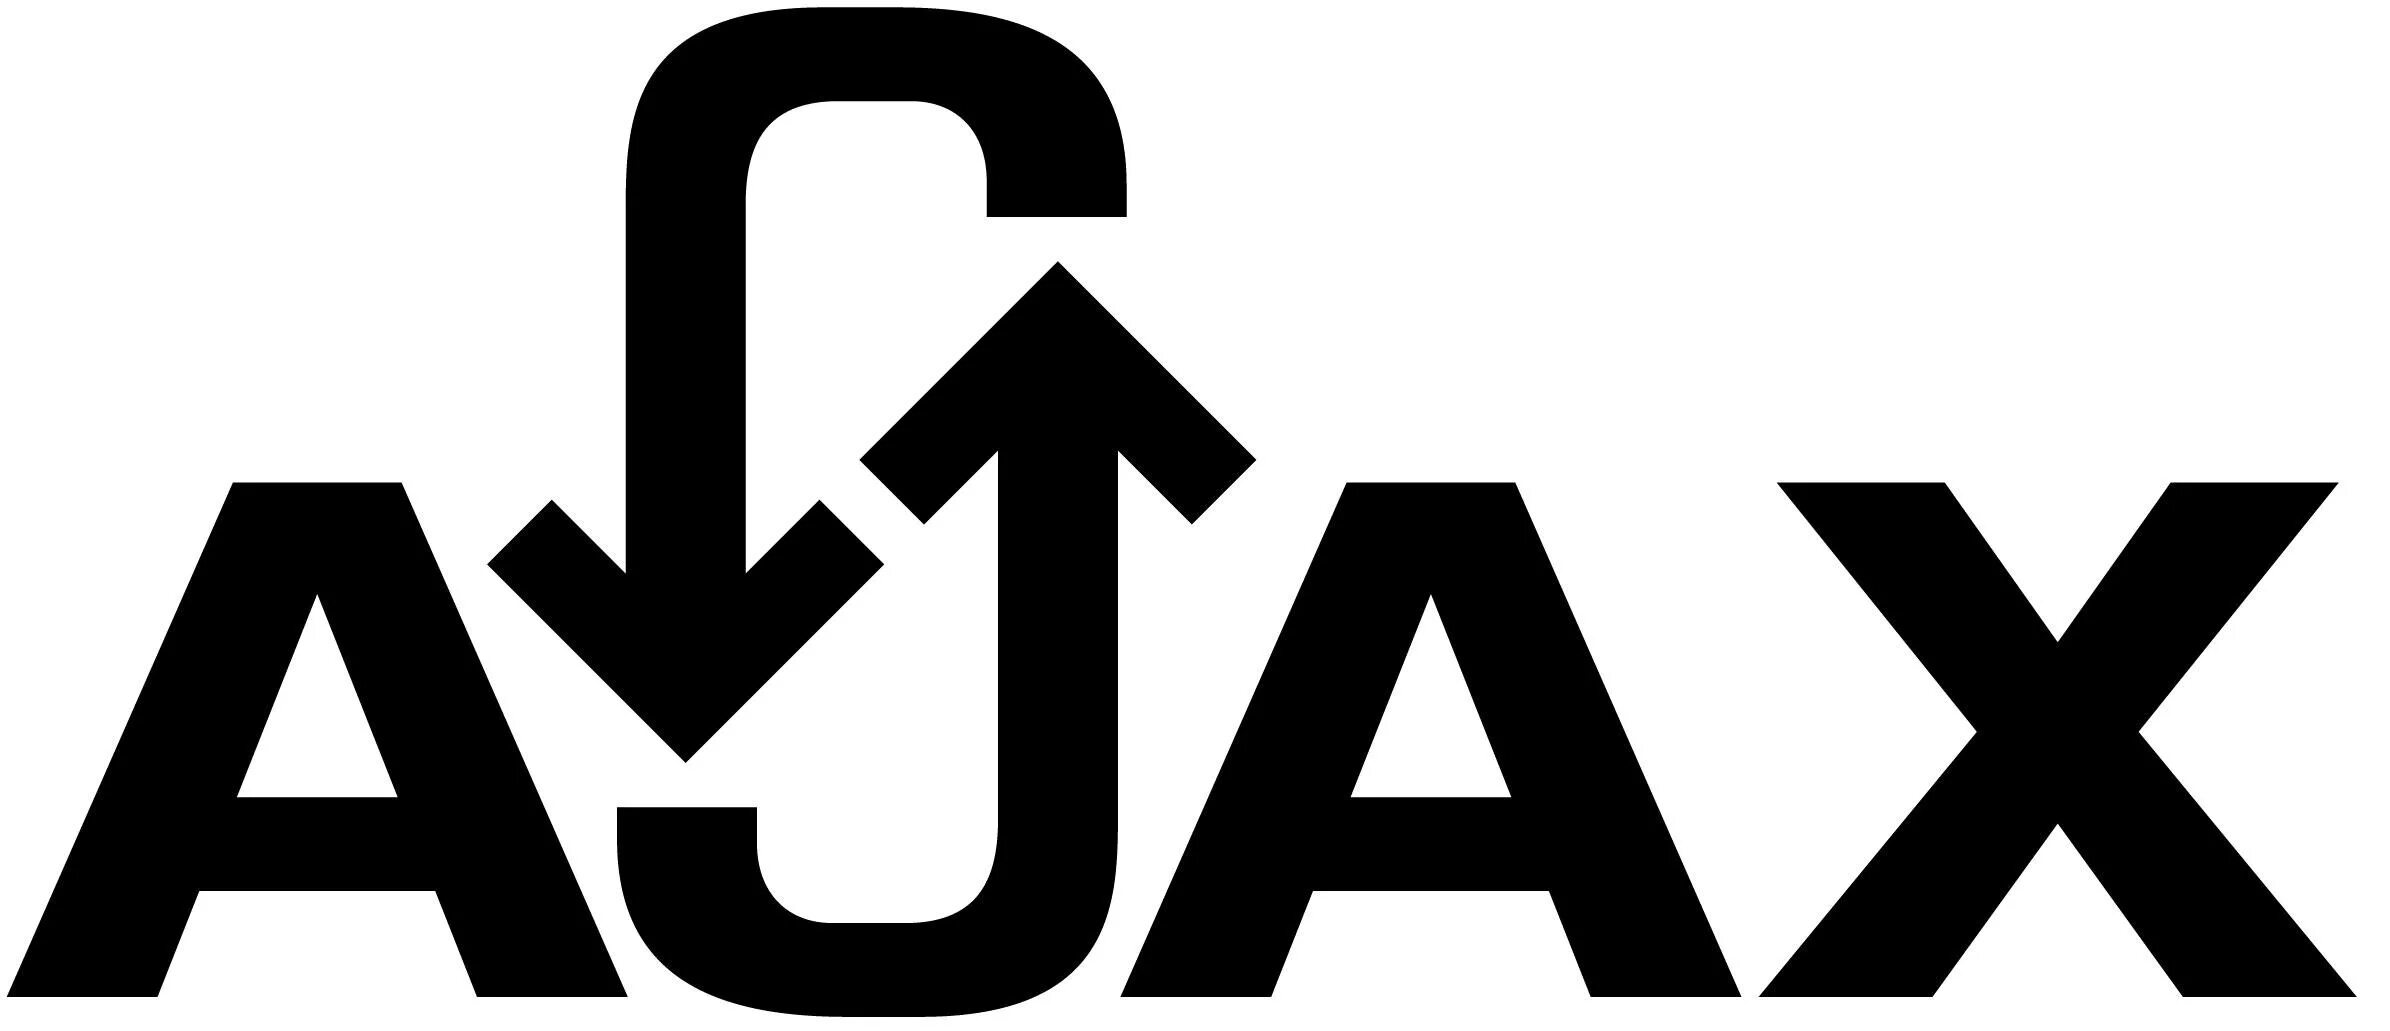 Ajax scripts. Ajax логотип. Ajax (програмування). Технология Ajax. Ajax язык.